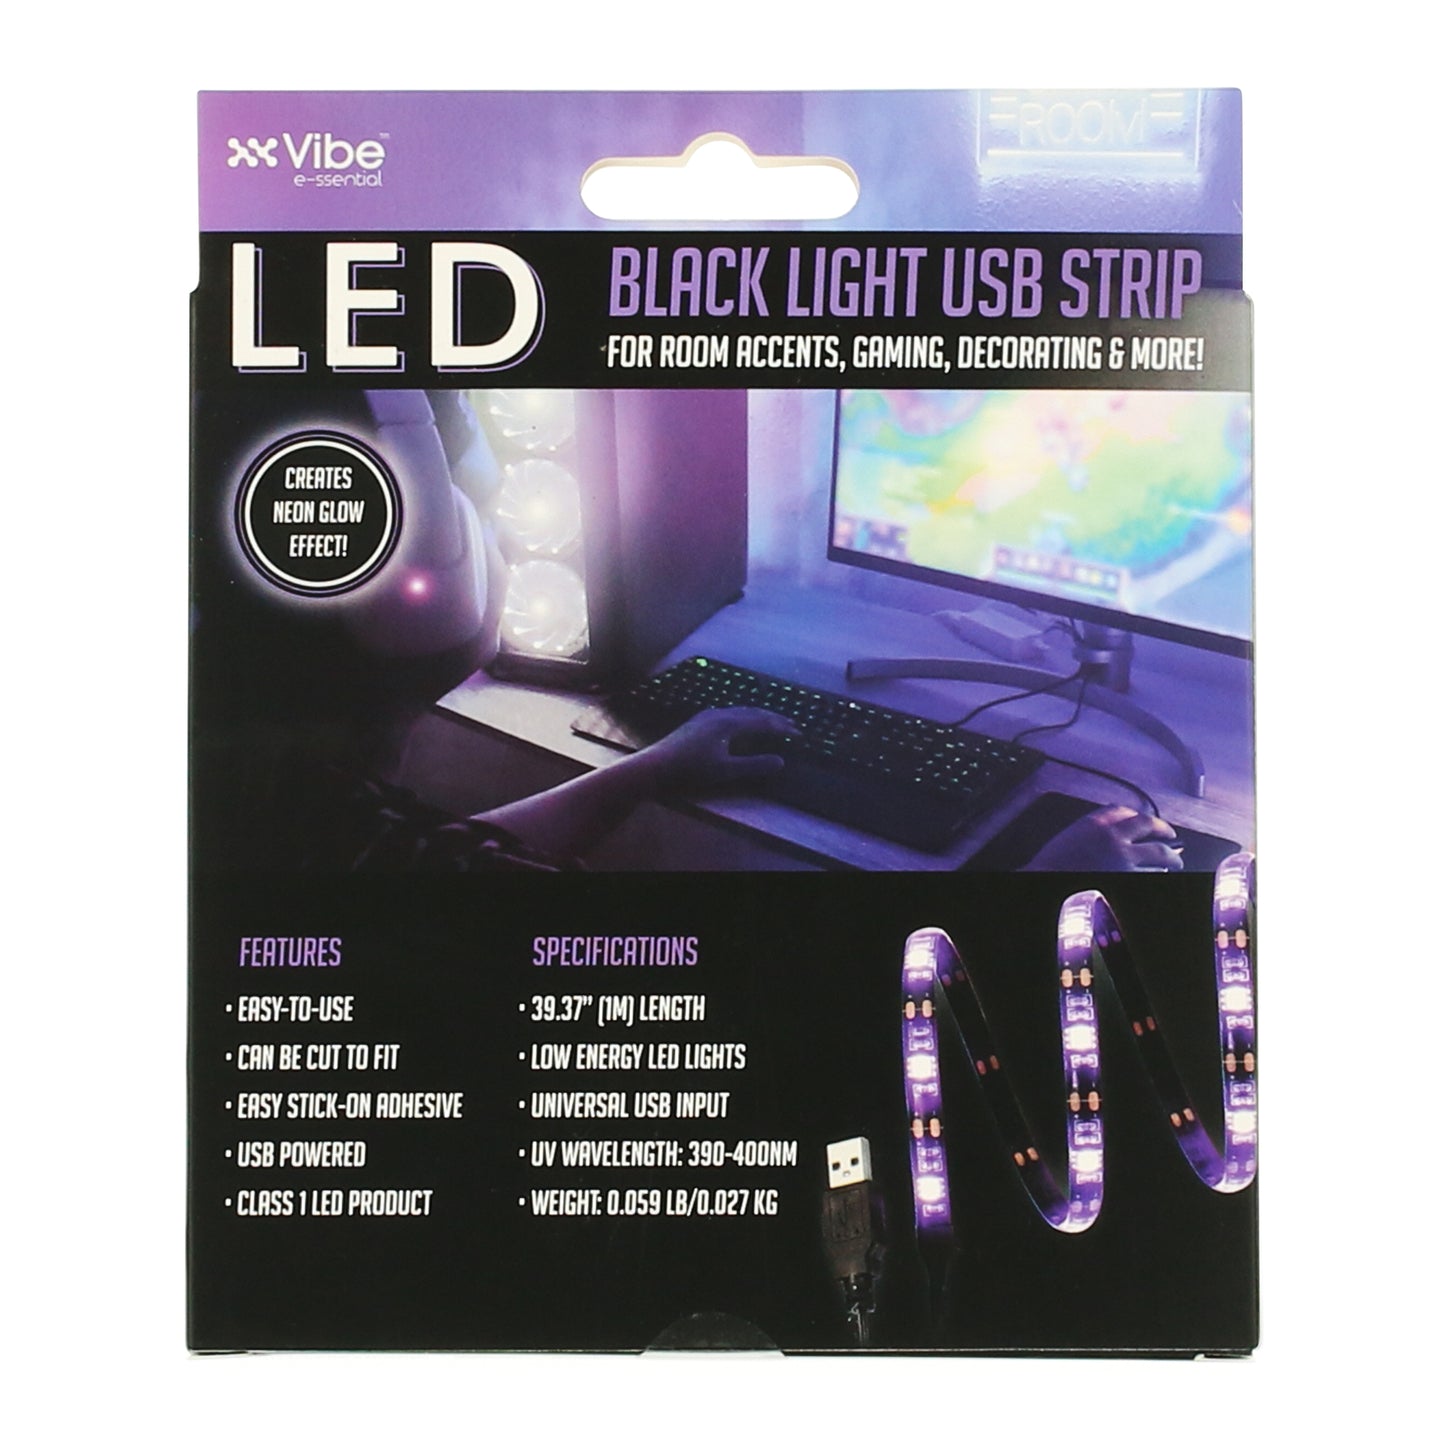 LED BLACK LIGHT STRIP